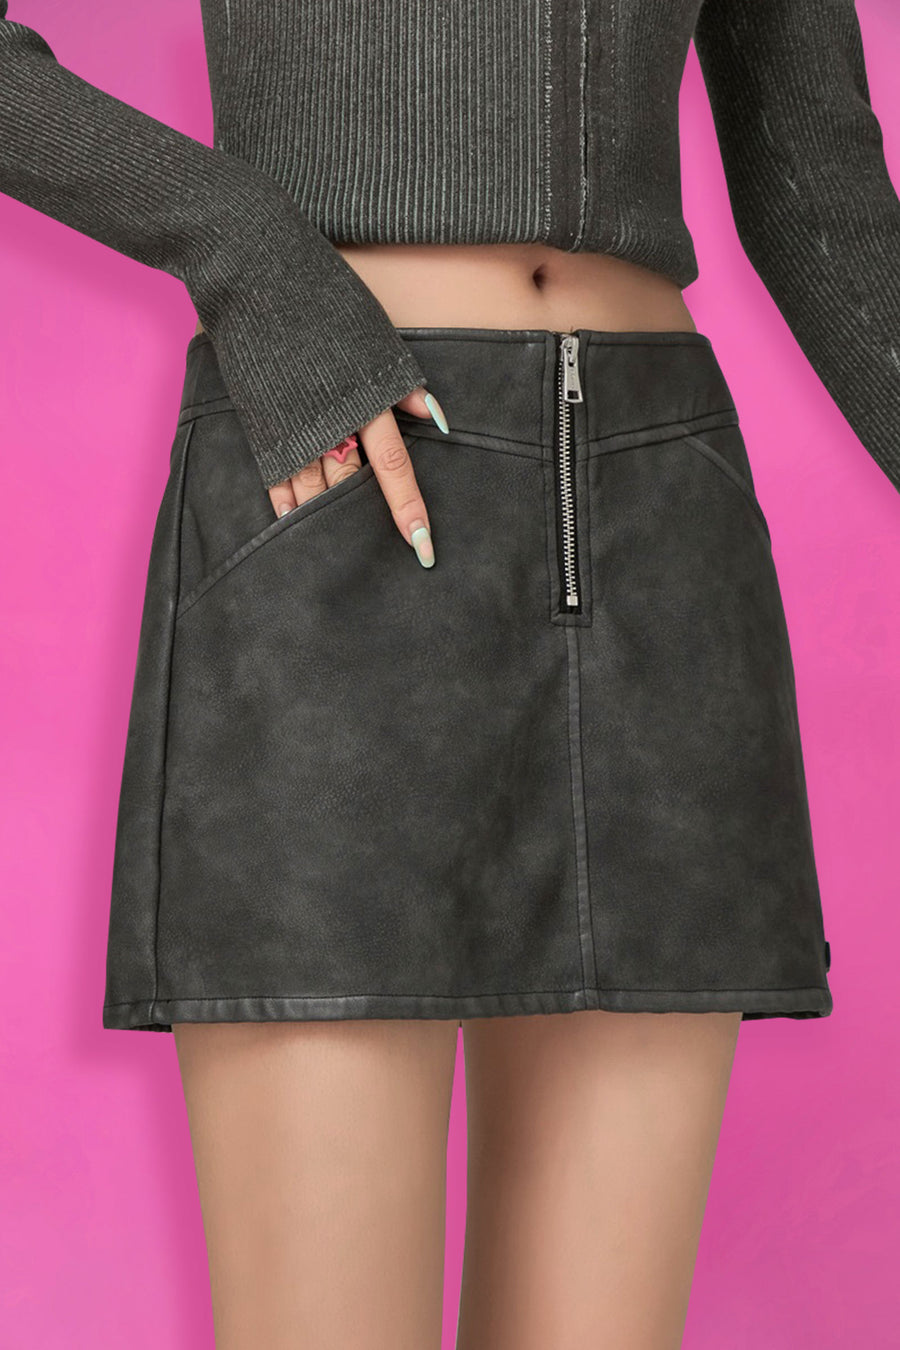 CHUU Zipper Leather Mini Skirt